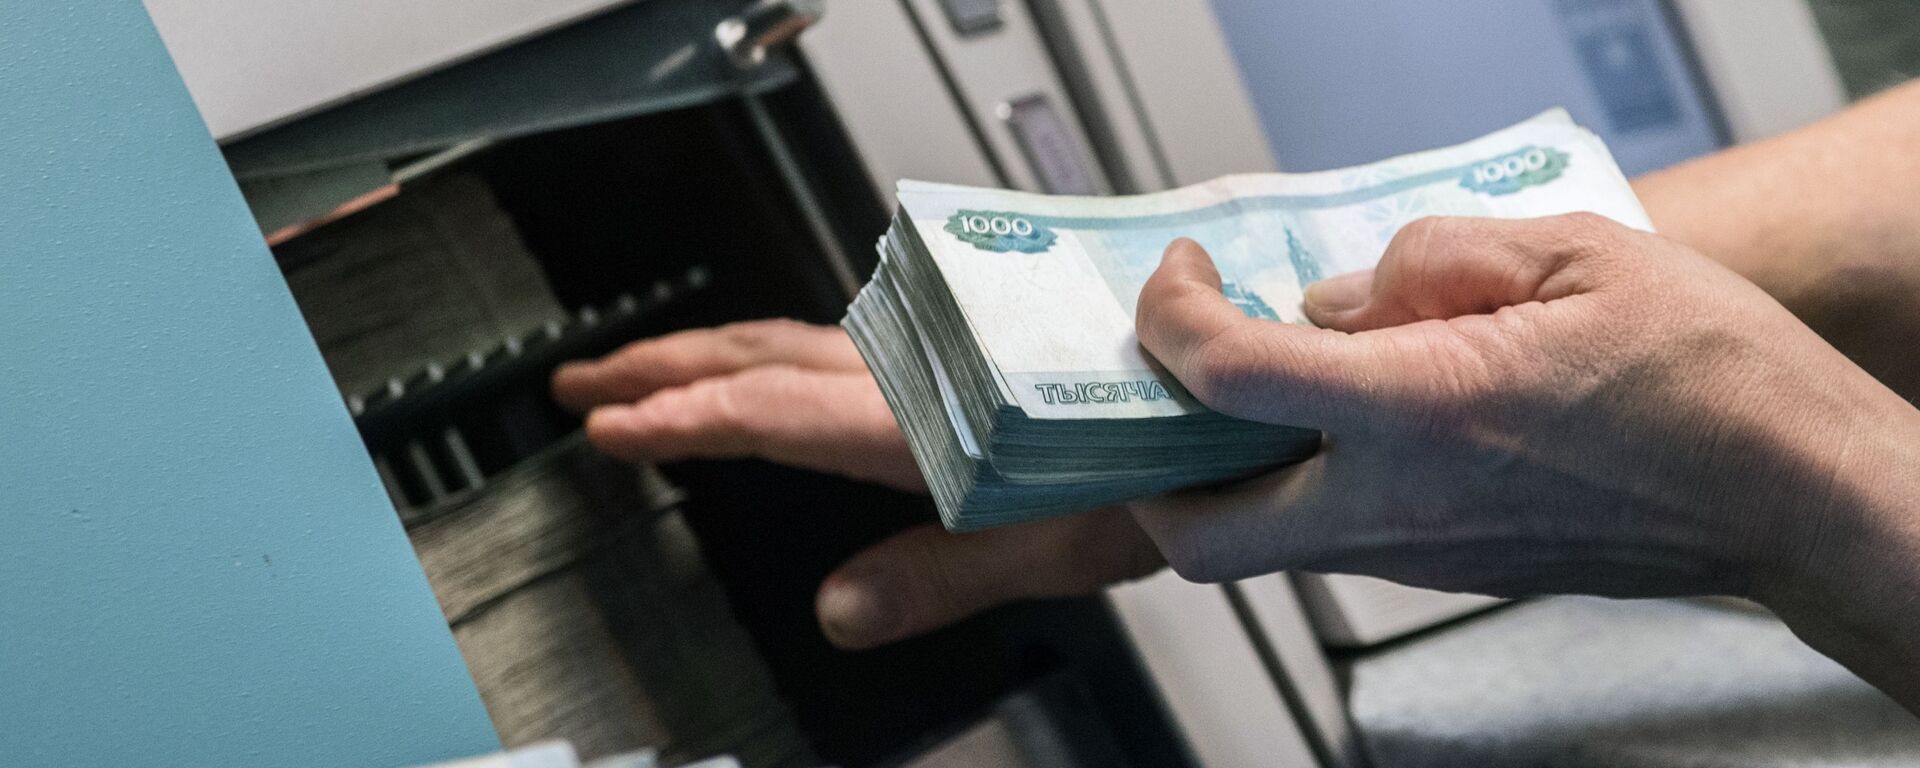 Уничтожение старых банкнот в Банке России - Sputnik Аҧсны, 1920, 24.12.2021